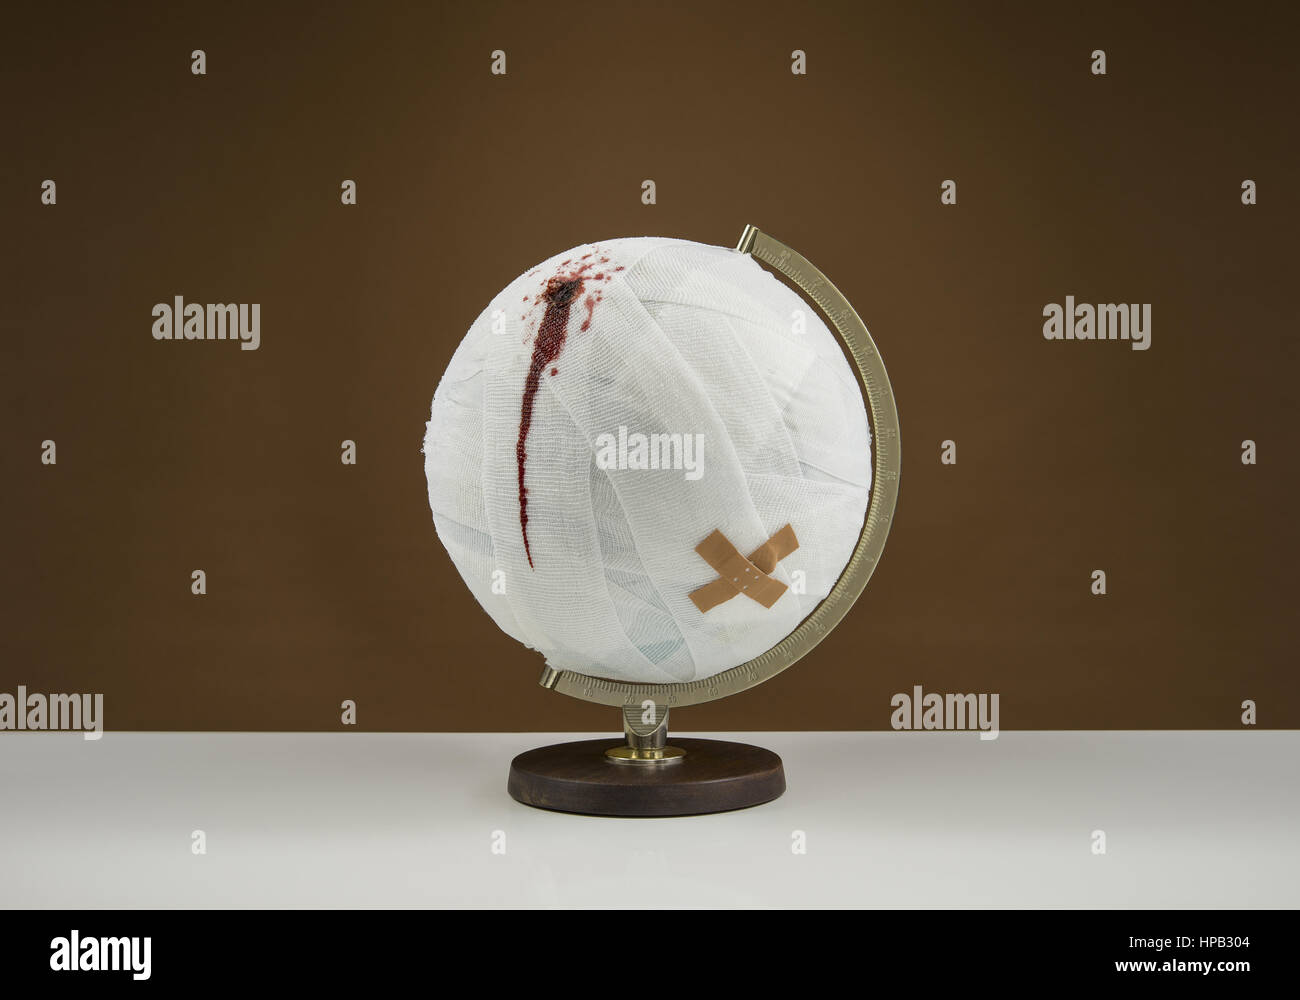 Verletzung und Verband mit globus, symbolbild Banque D'Images